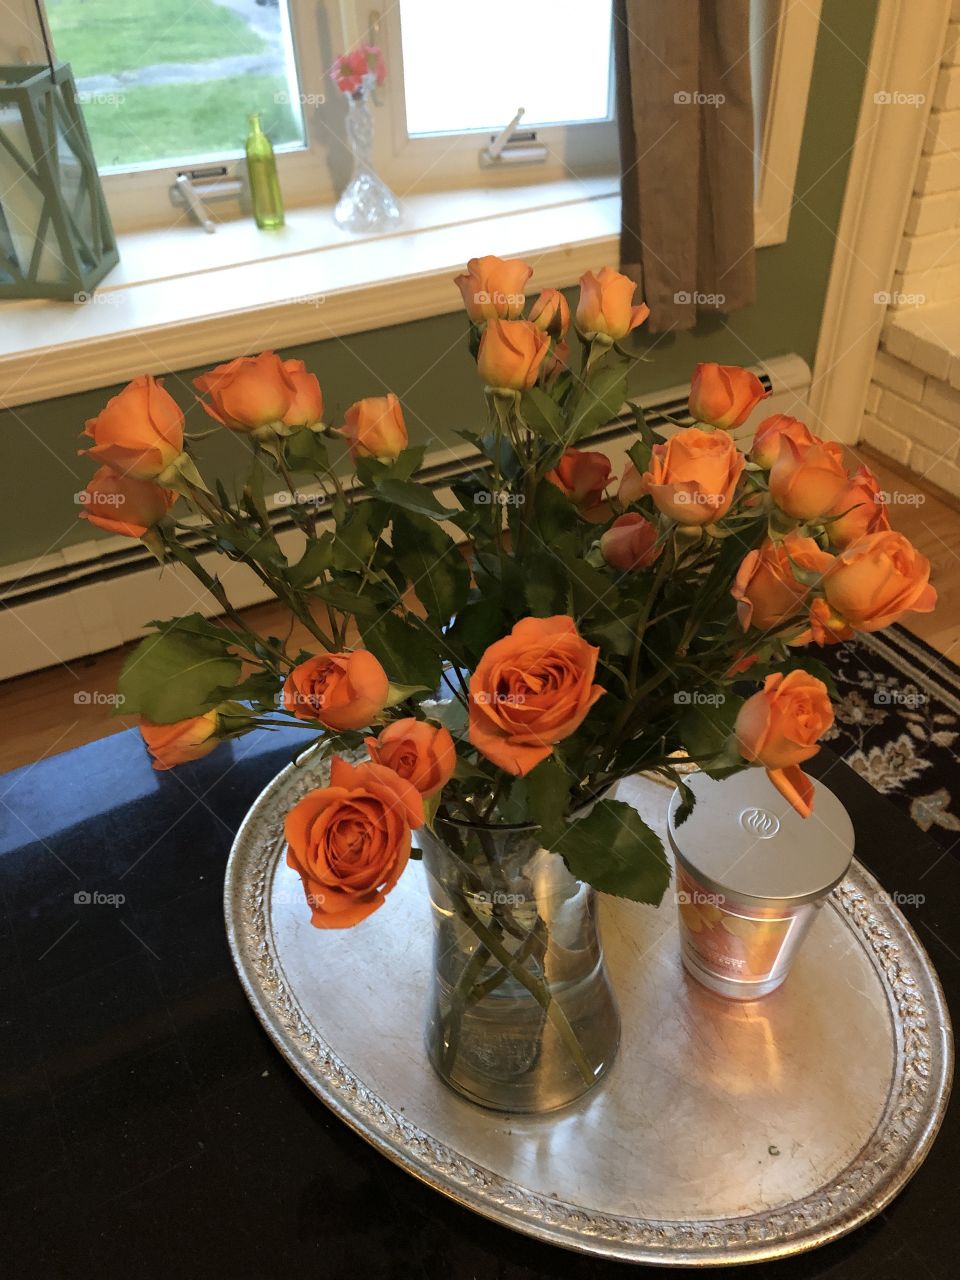 orange rose 